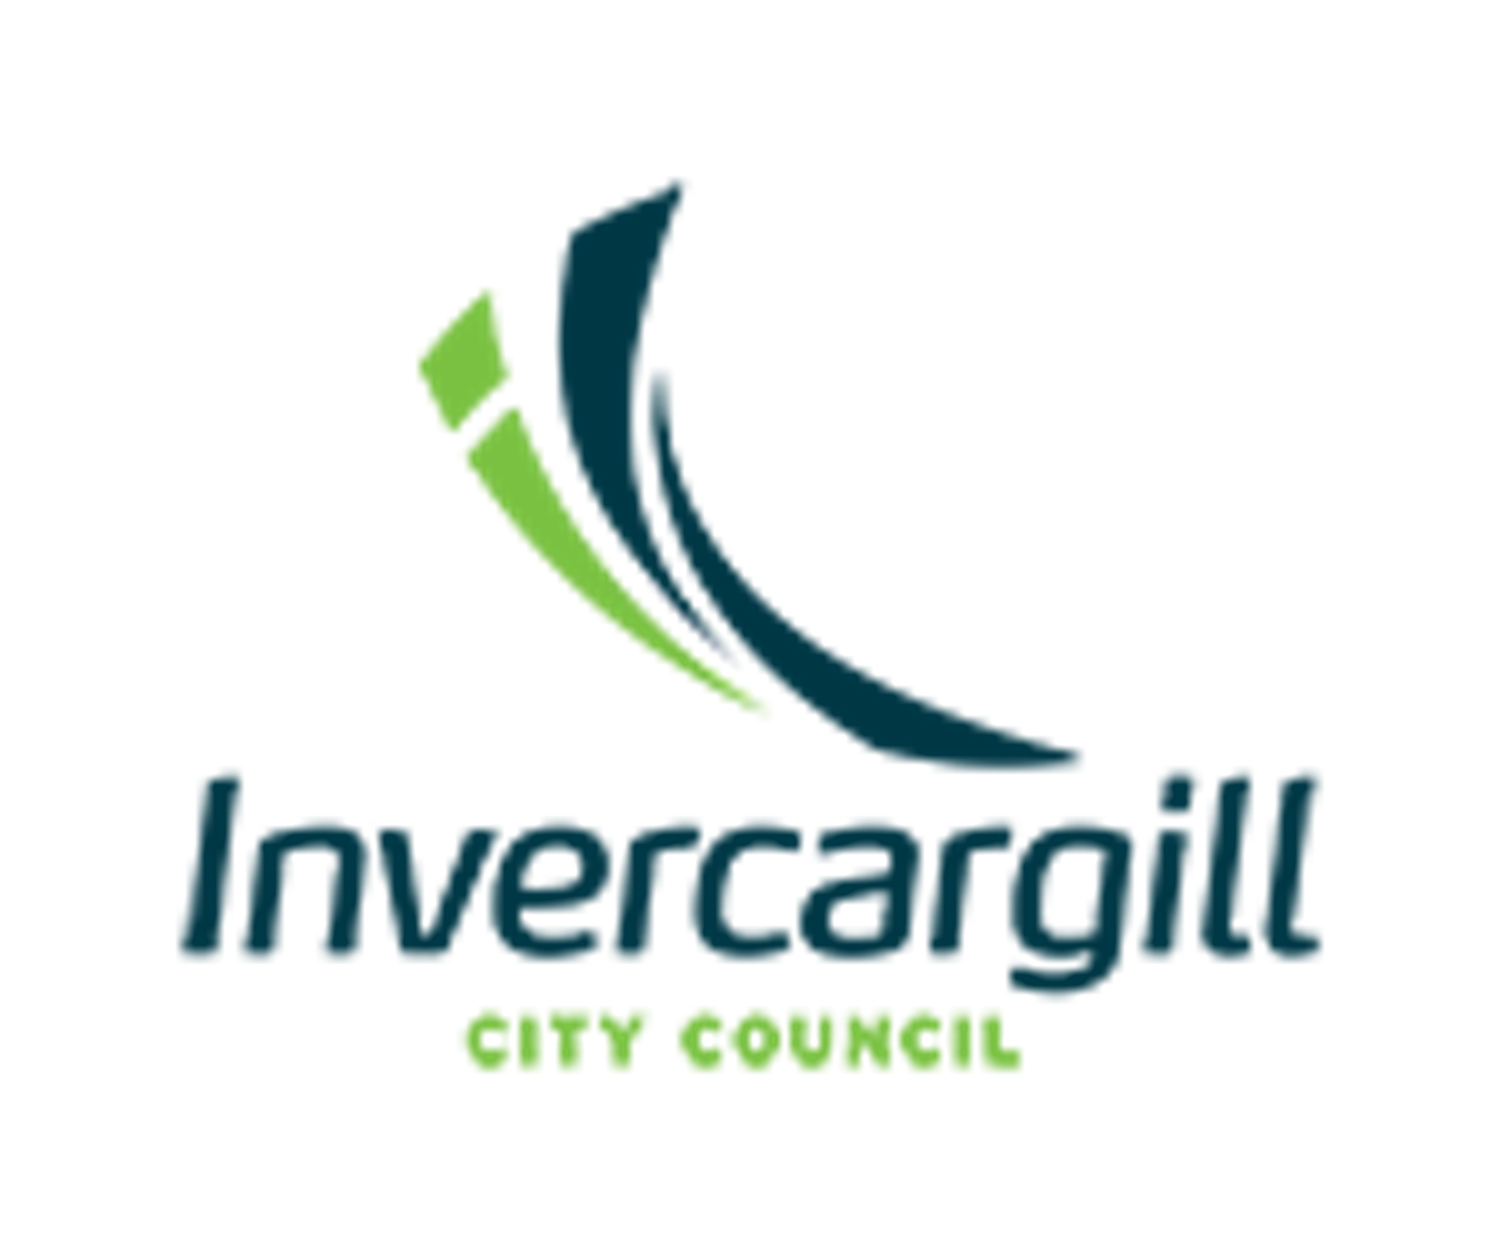 Let's talk Invercargill